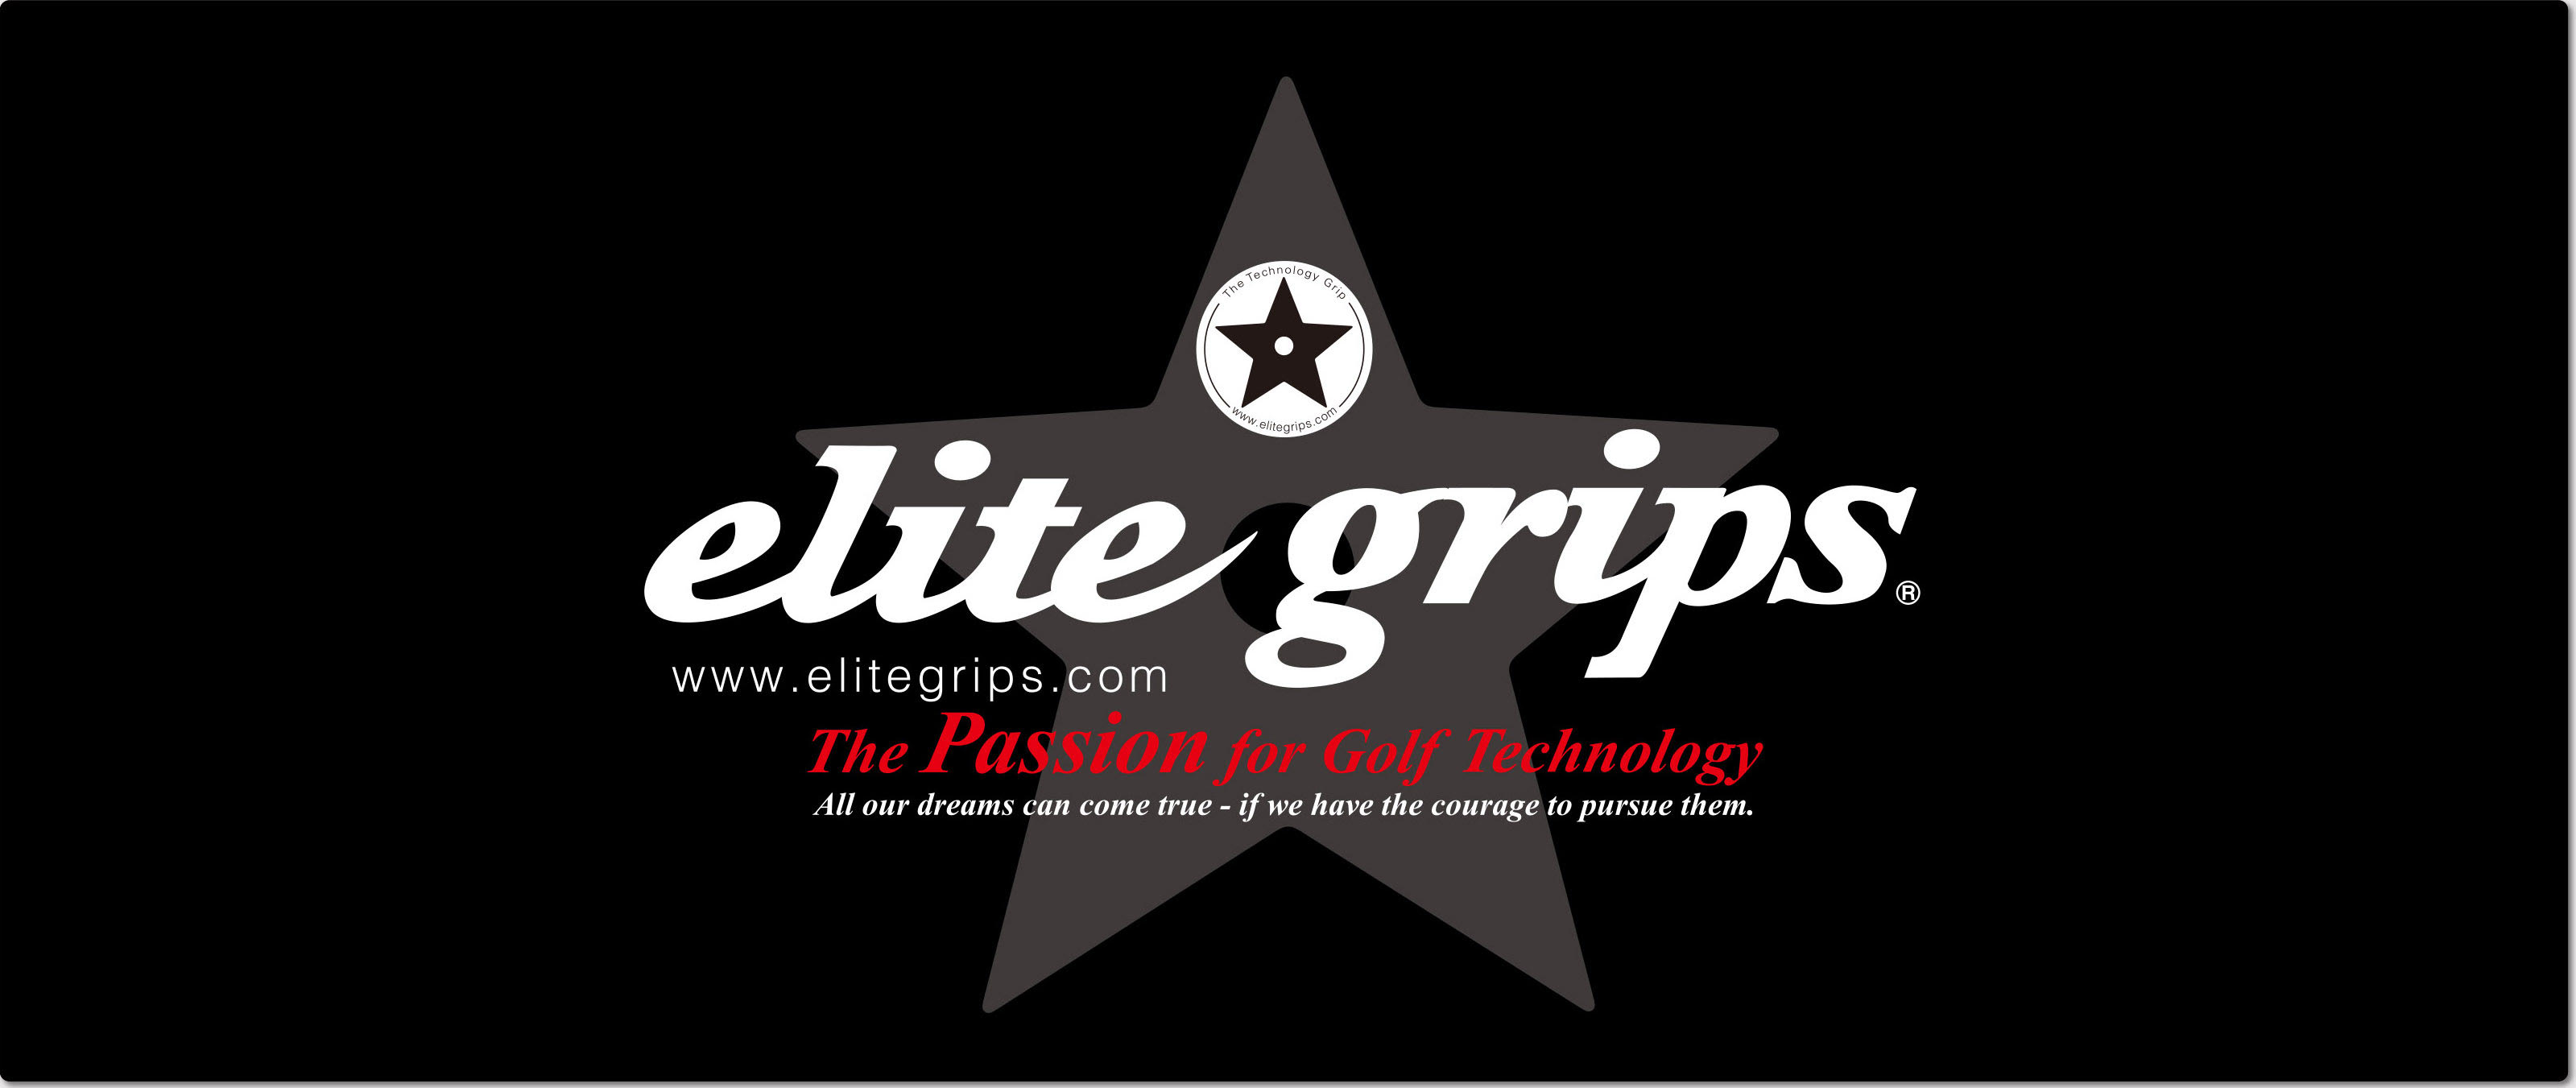 elite grips